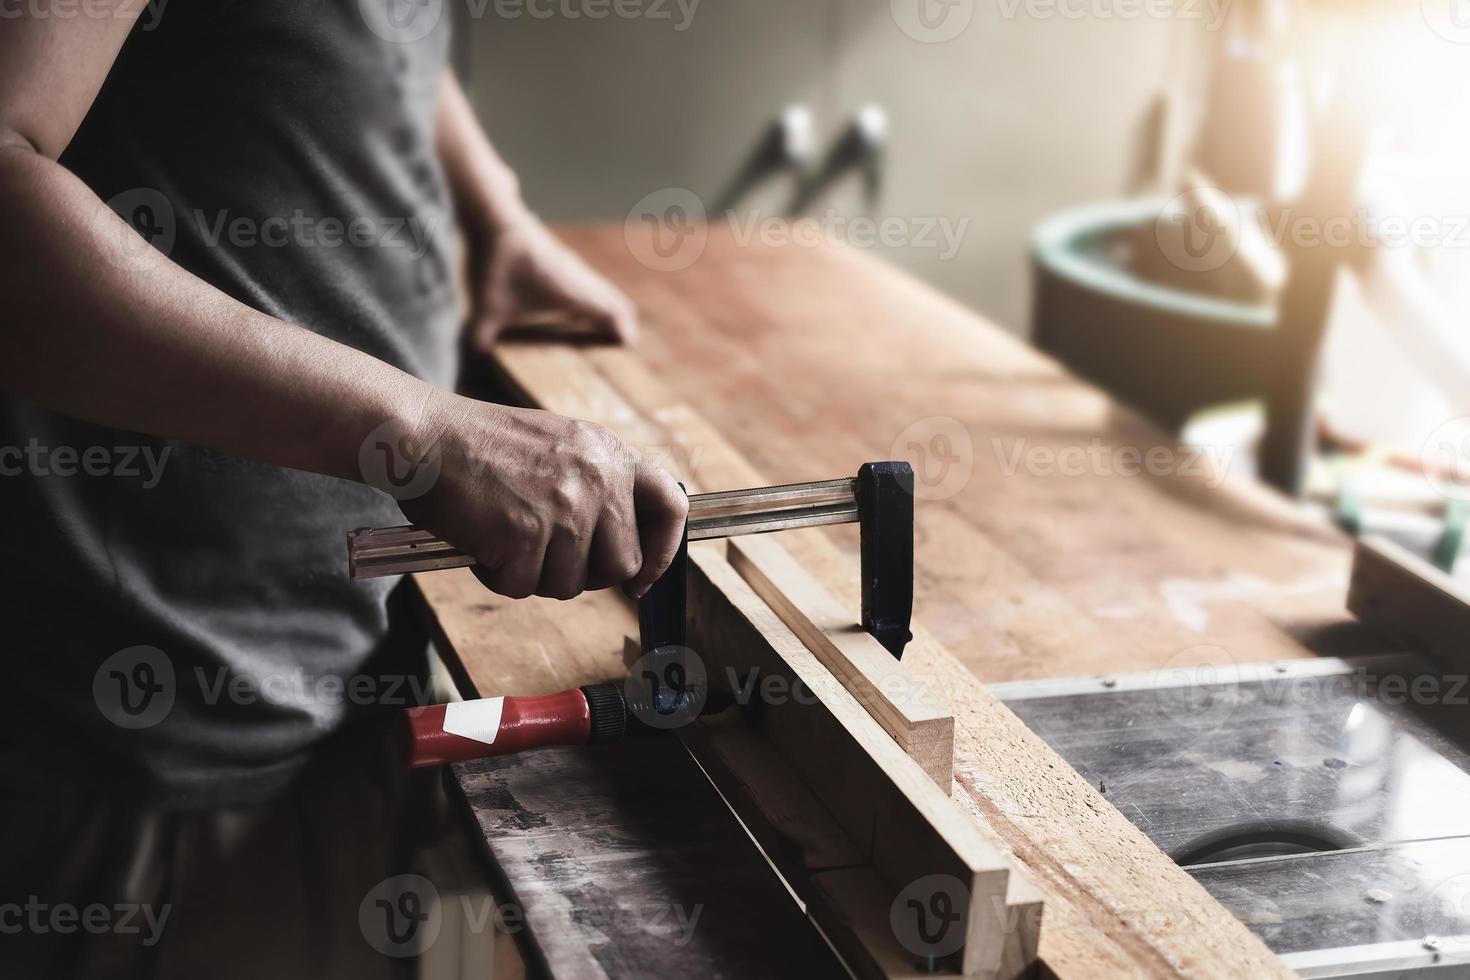 gli operatori della lavorazione del legno stanno decorando pezzi di legno per assemblare e costruire tavoli in legno per il cliente foto